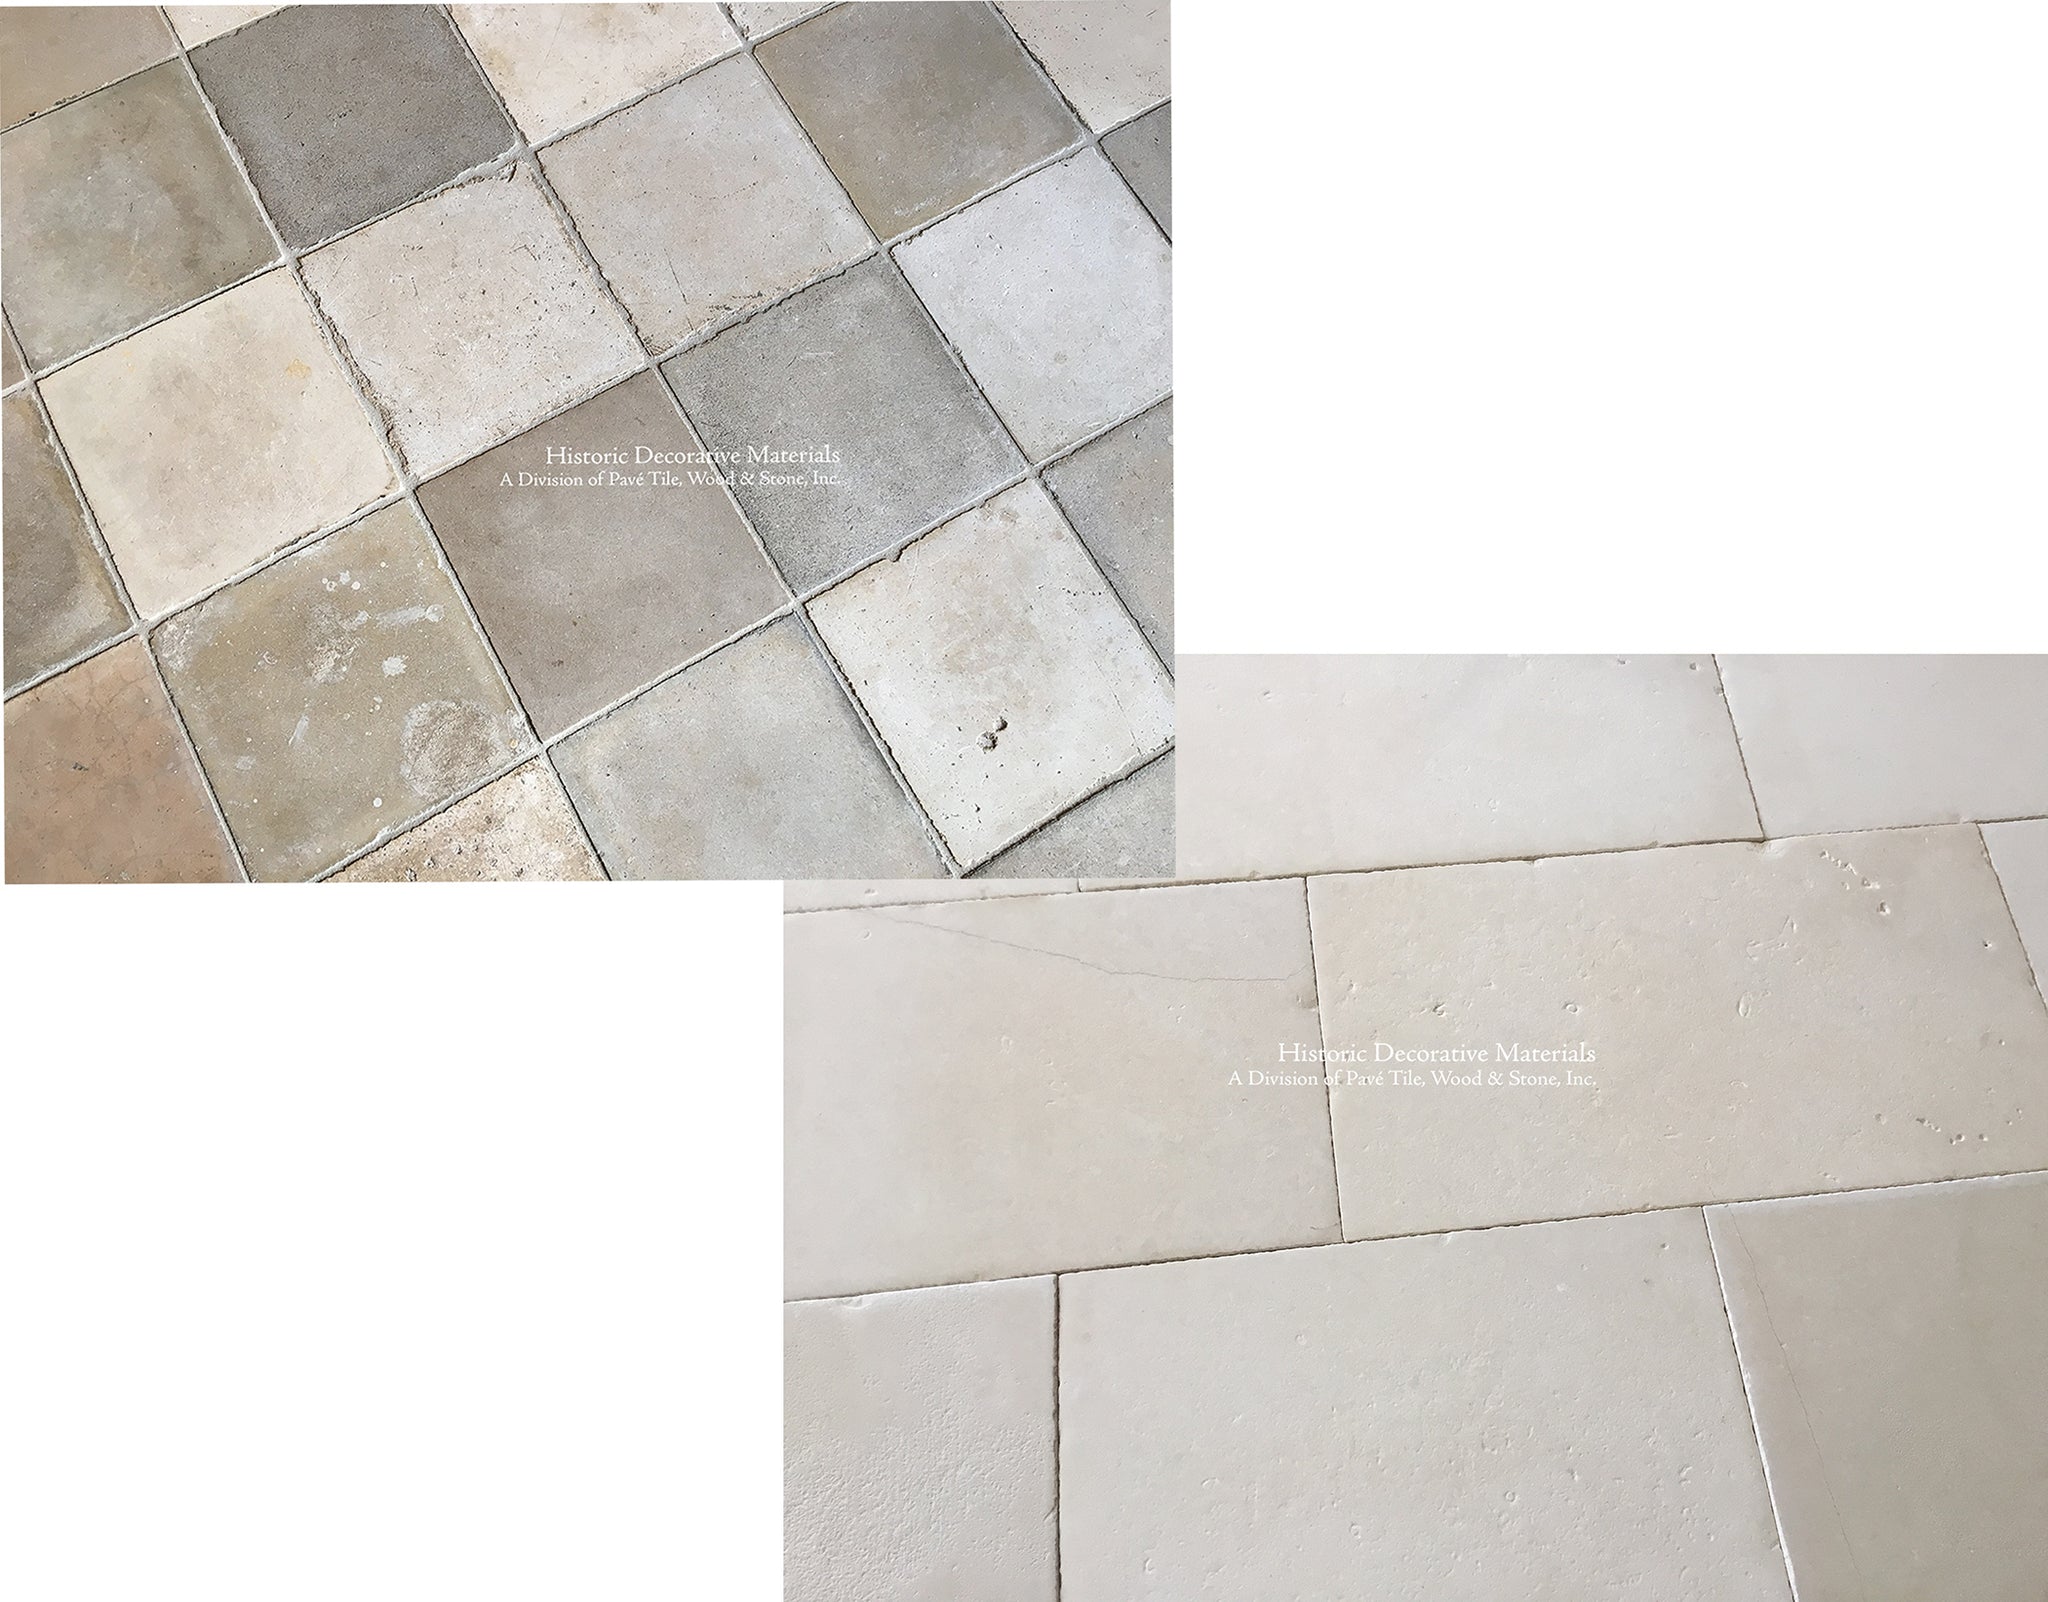 Israeli Limestone Flooring and Reclaimed Cement Tile Flooring